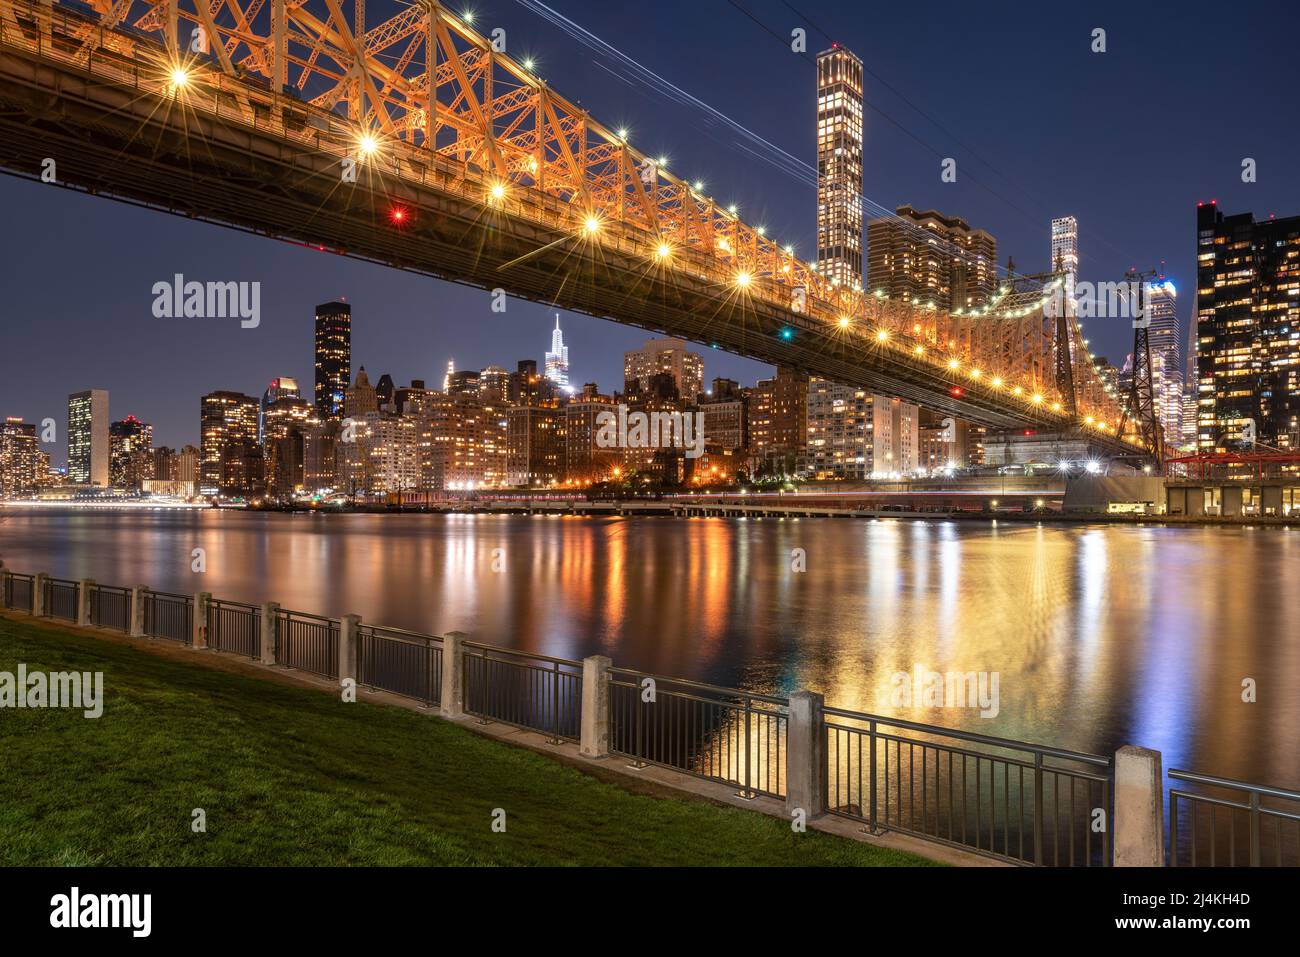 Puente Queensborough iluminado que abarca desde el Upper East Side de Manhattan hasta la isla Roosevelt. Vista nocturna de los rascacielos de la ciudad de Nueva York Foto de stock